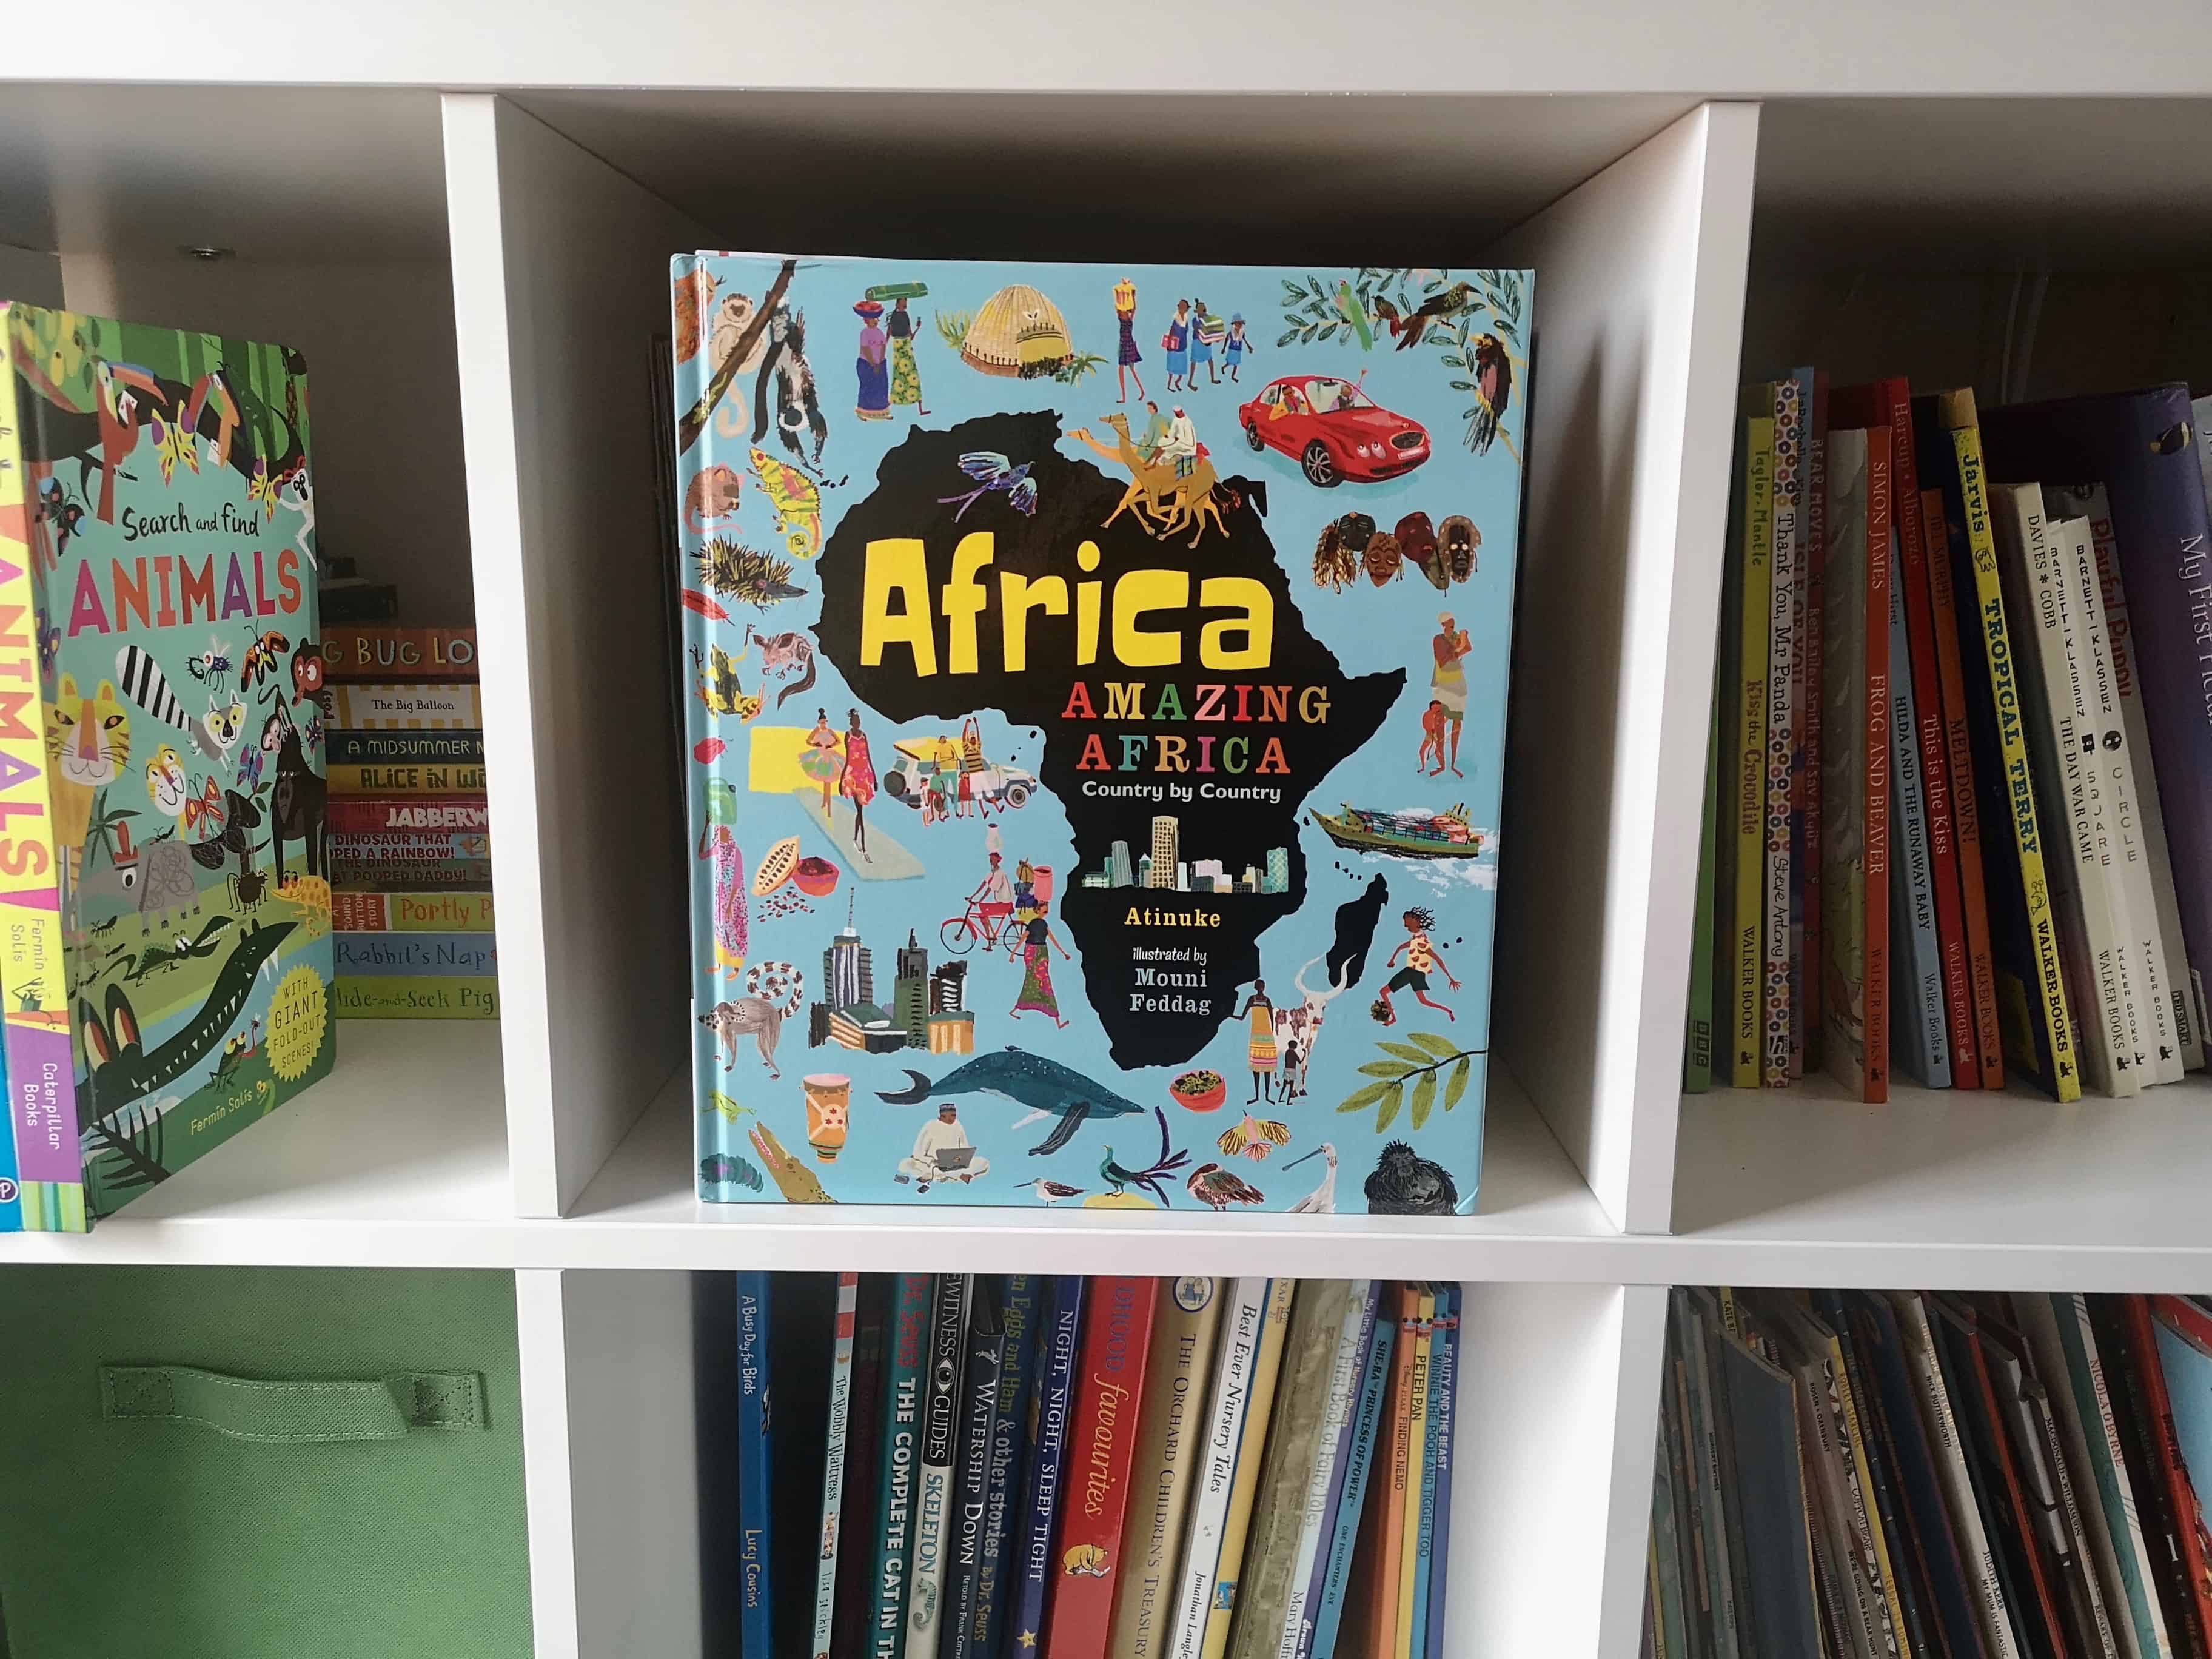 Africa, Amazing Africa by Atinuke